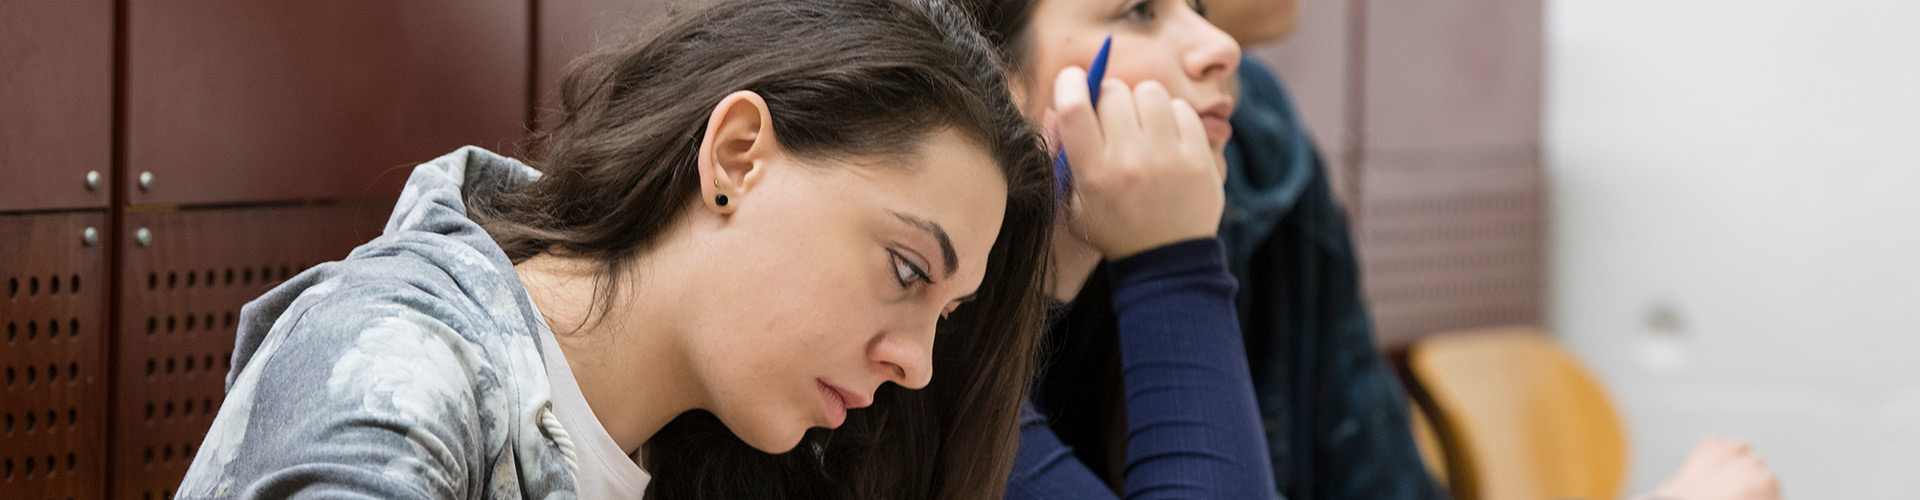 Zwei Studentinnen machen sich Notizen während einer Vorlesung